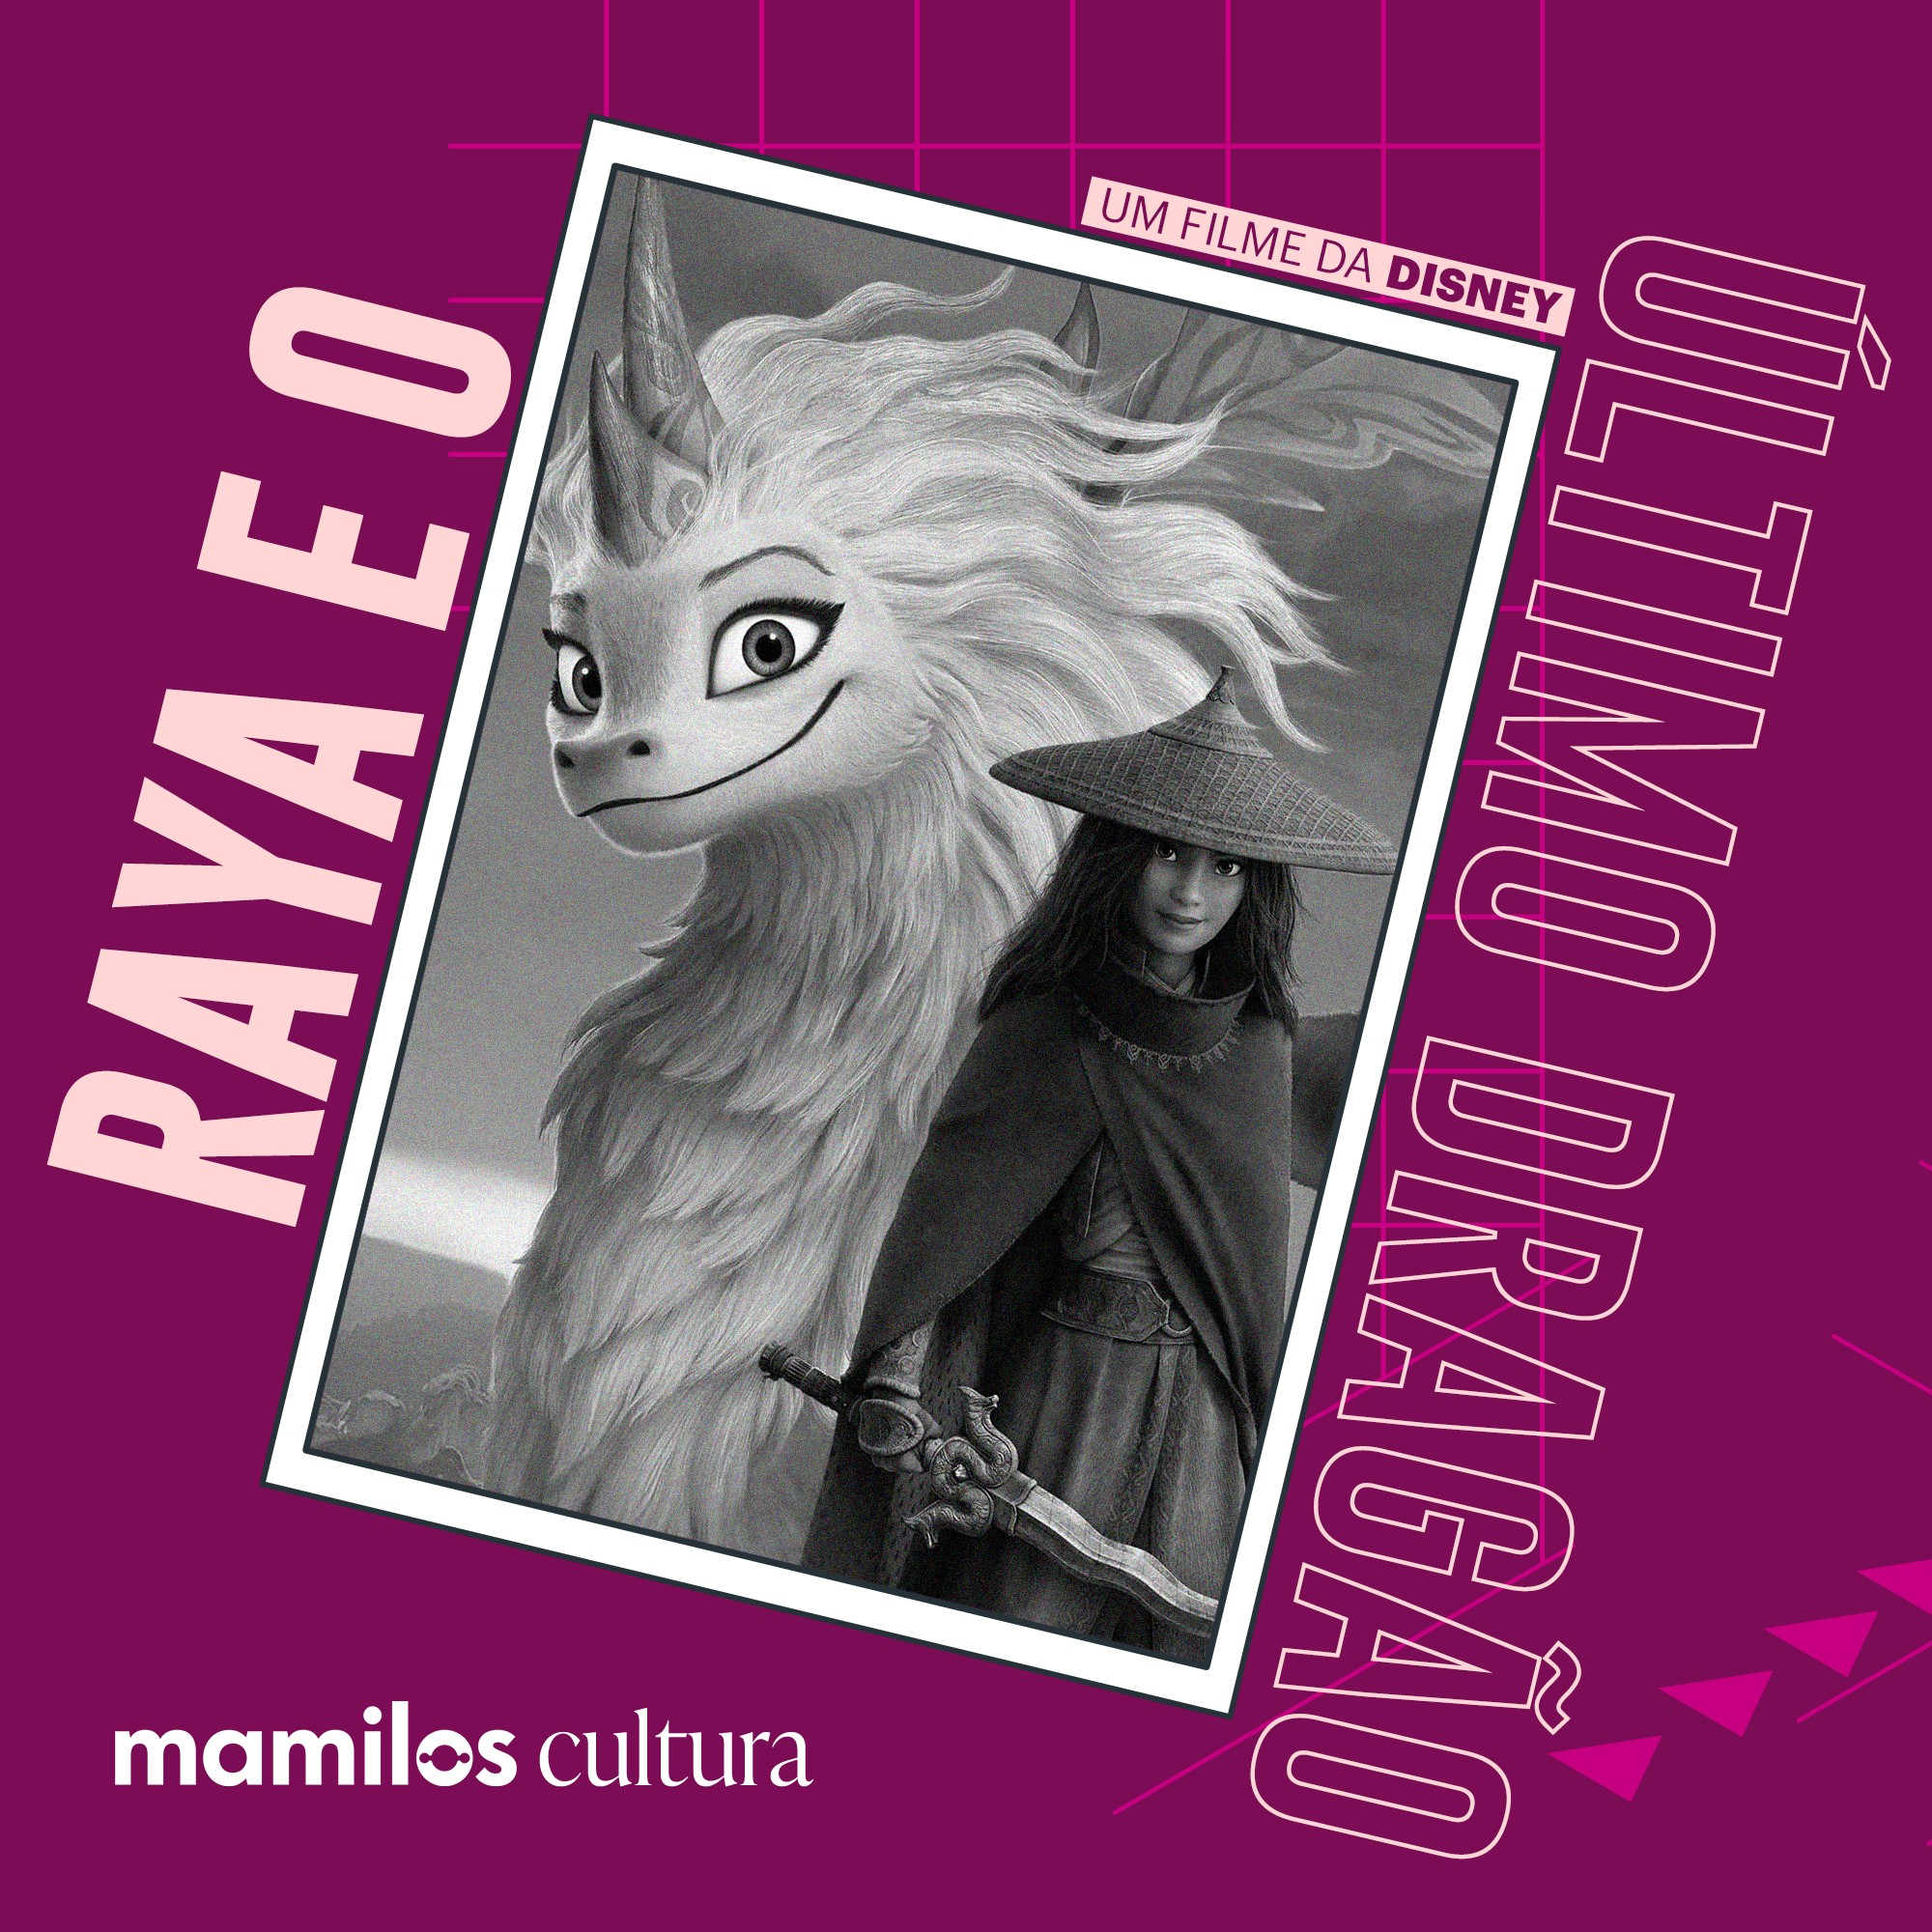 Mamilos Cultura 29: Filme “Raya e o Último Dragão” - O caminho para a confiança